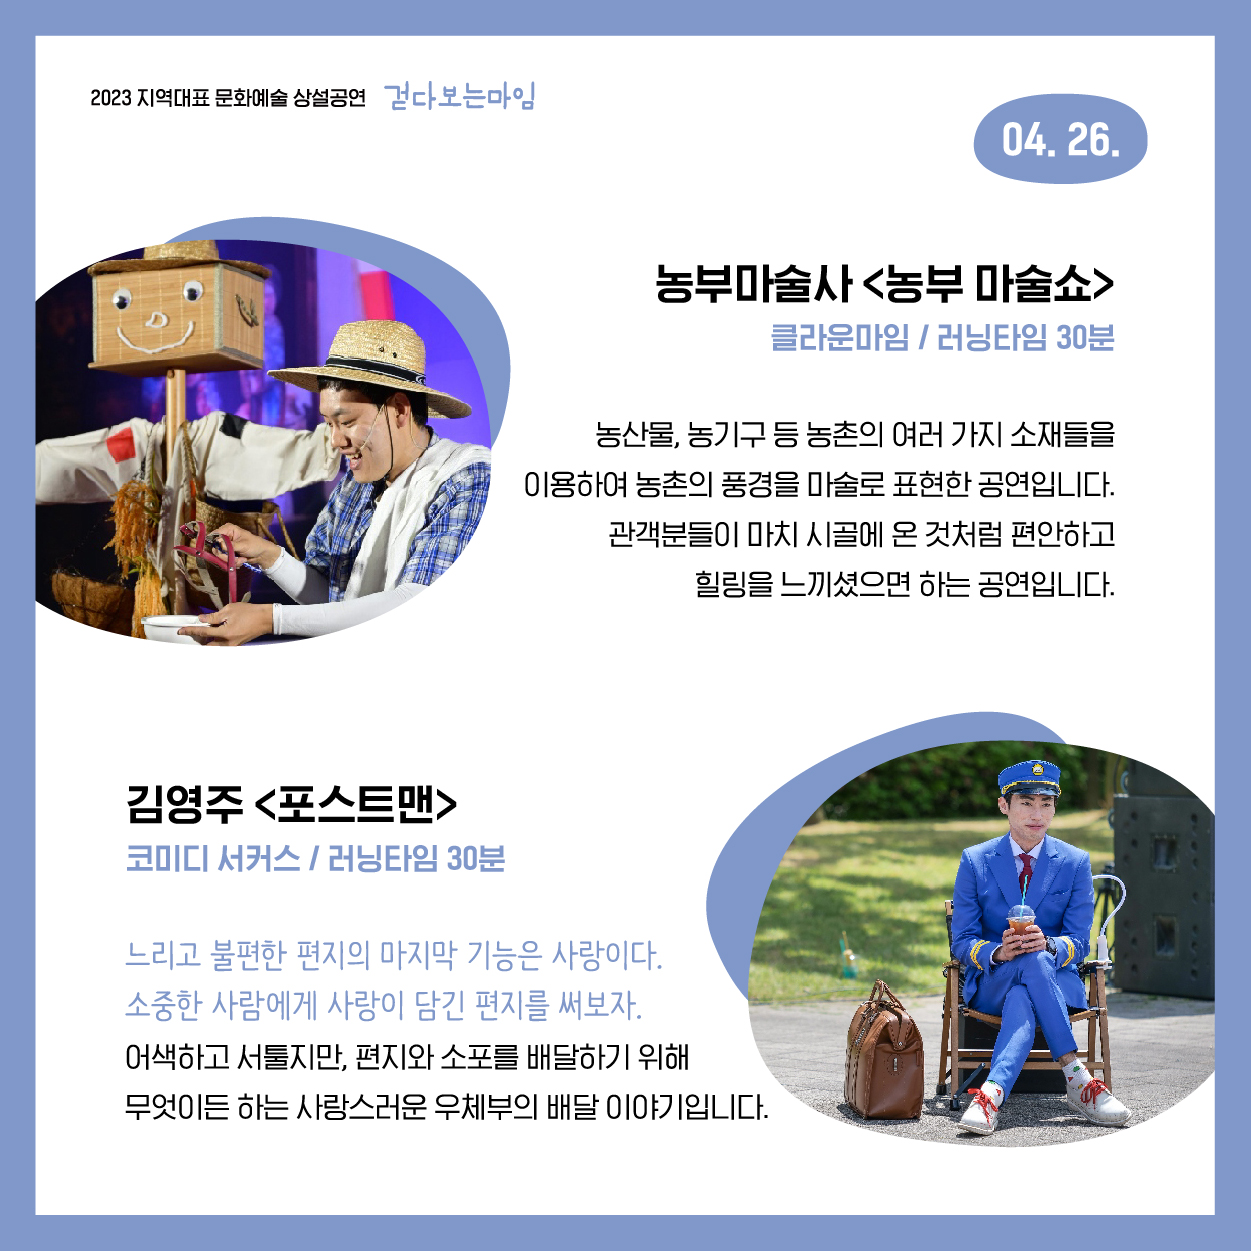 2023 지역대표 문화예술 상설공연 ｢걷다보는 마임｣ 공연